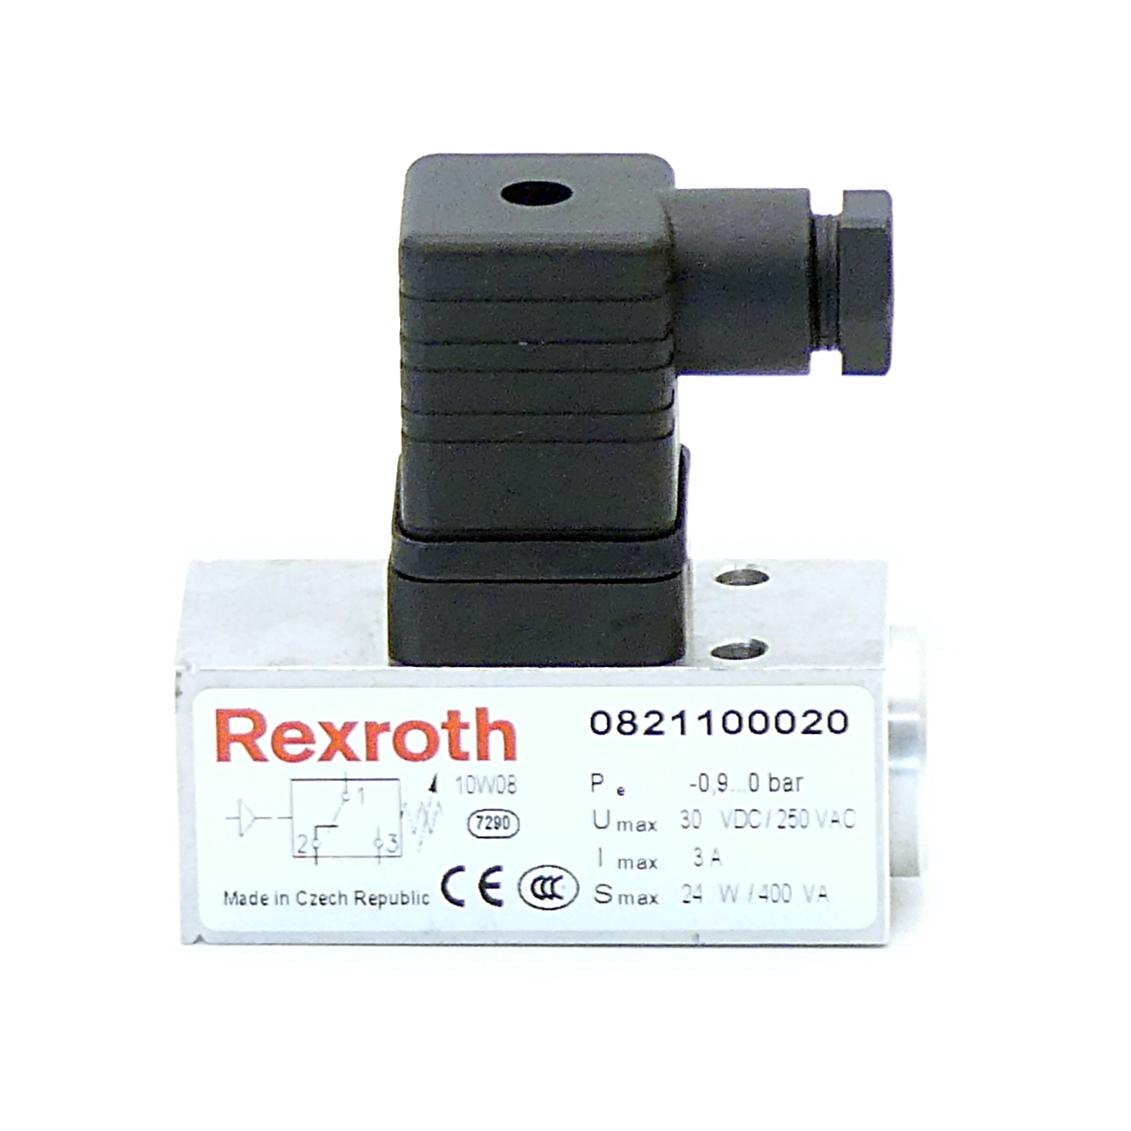 Produktfoto 3 von REXROTH Mechanischer Druckschalter